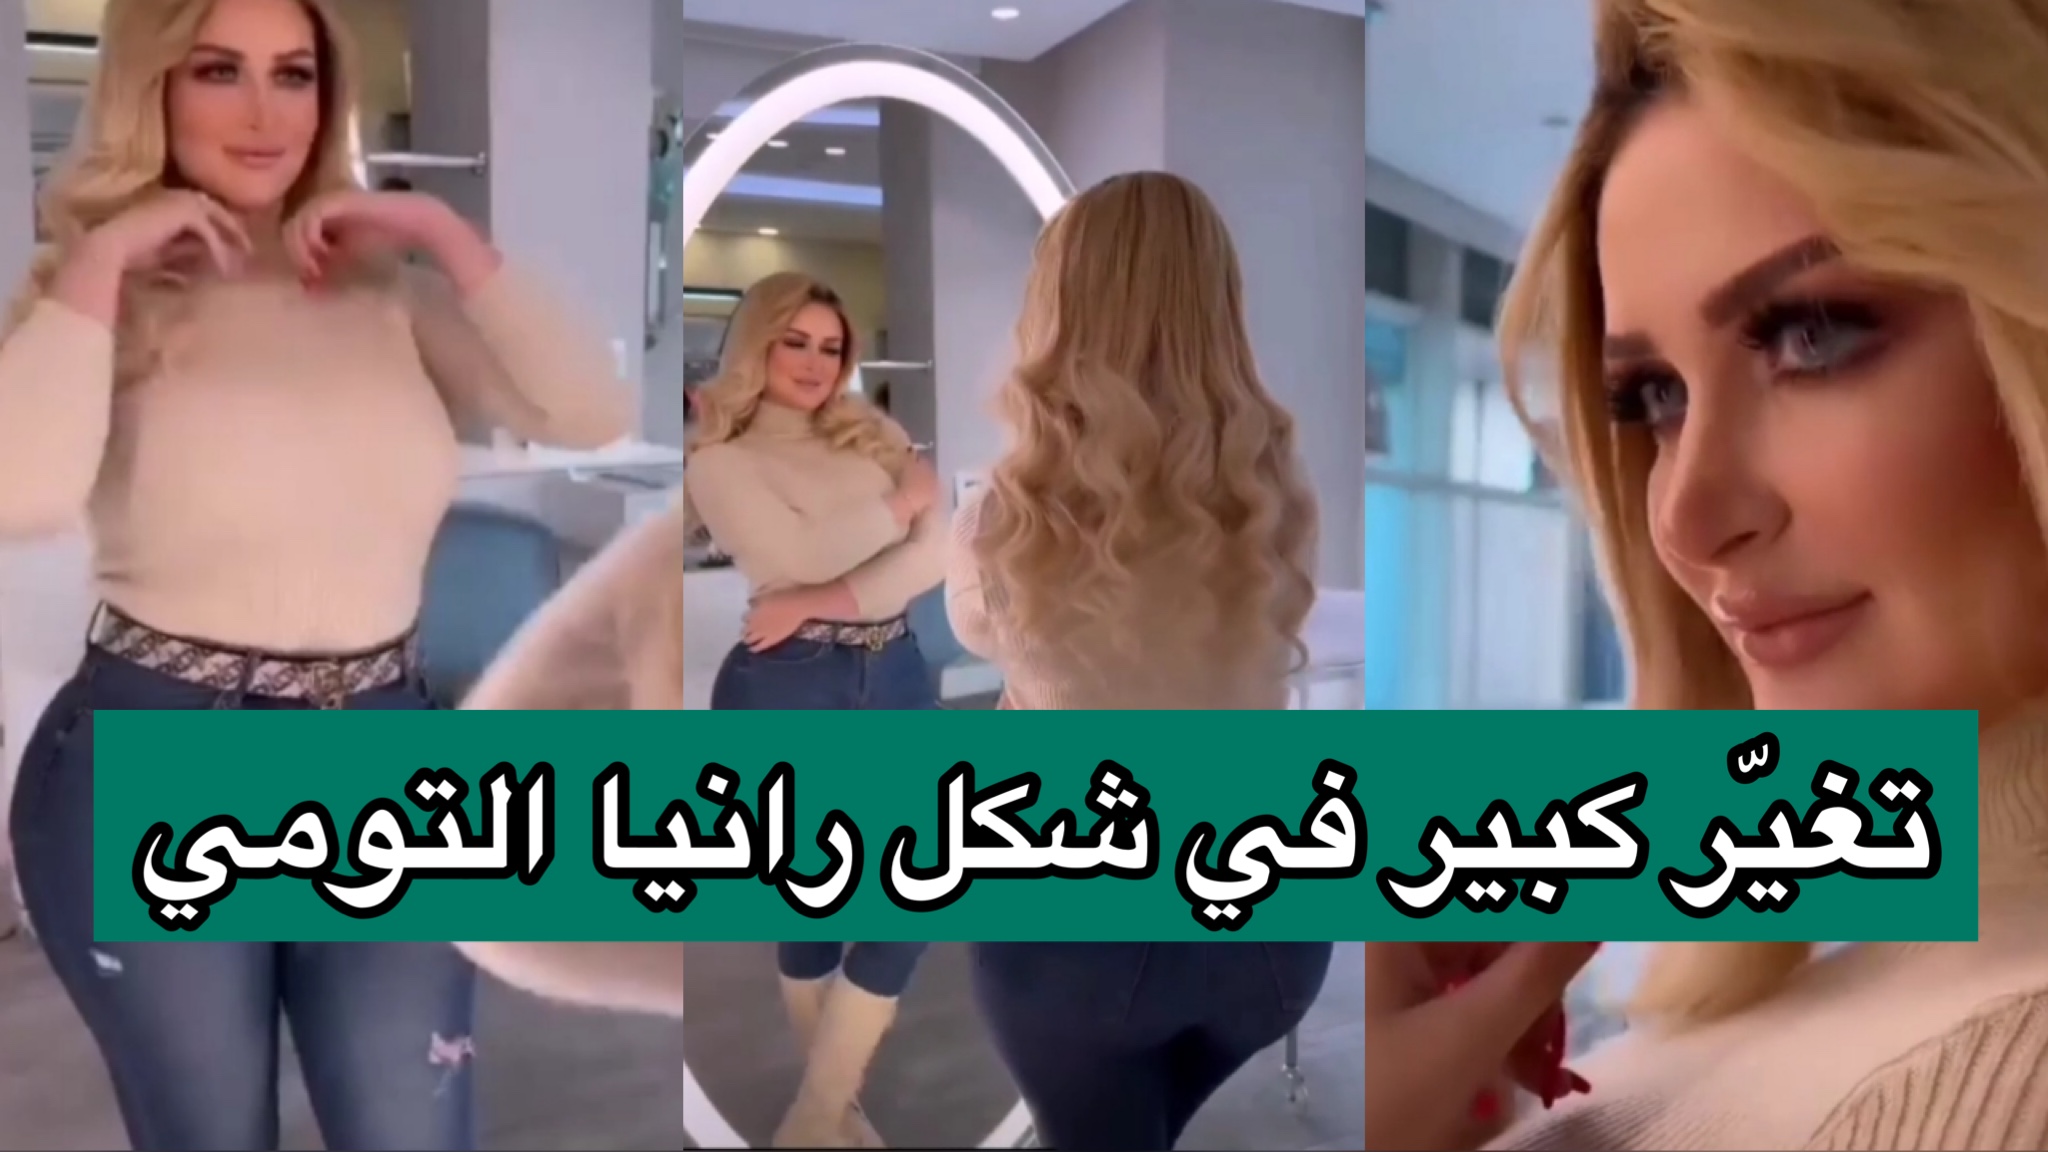 بالفيديو/ رانيا التومي تنشر فيديو مثير جدا بعد تغيير كبير في ملامح وجهها و جسمها